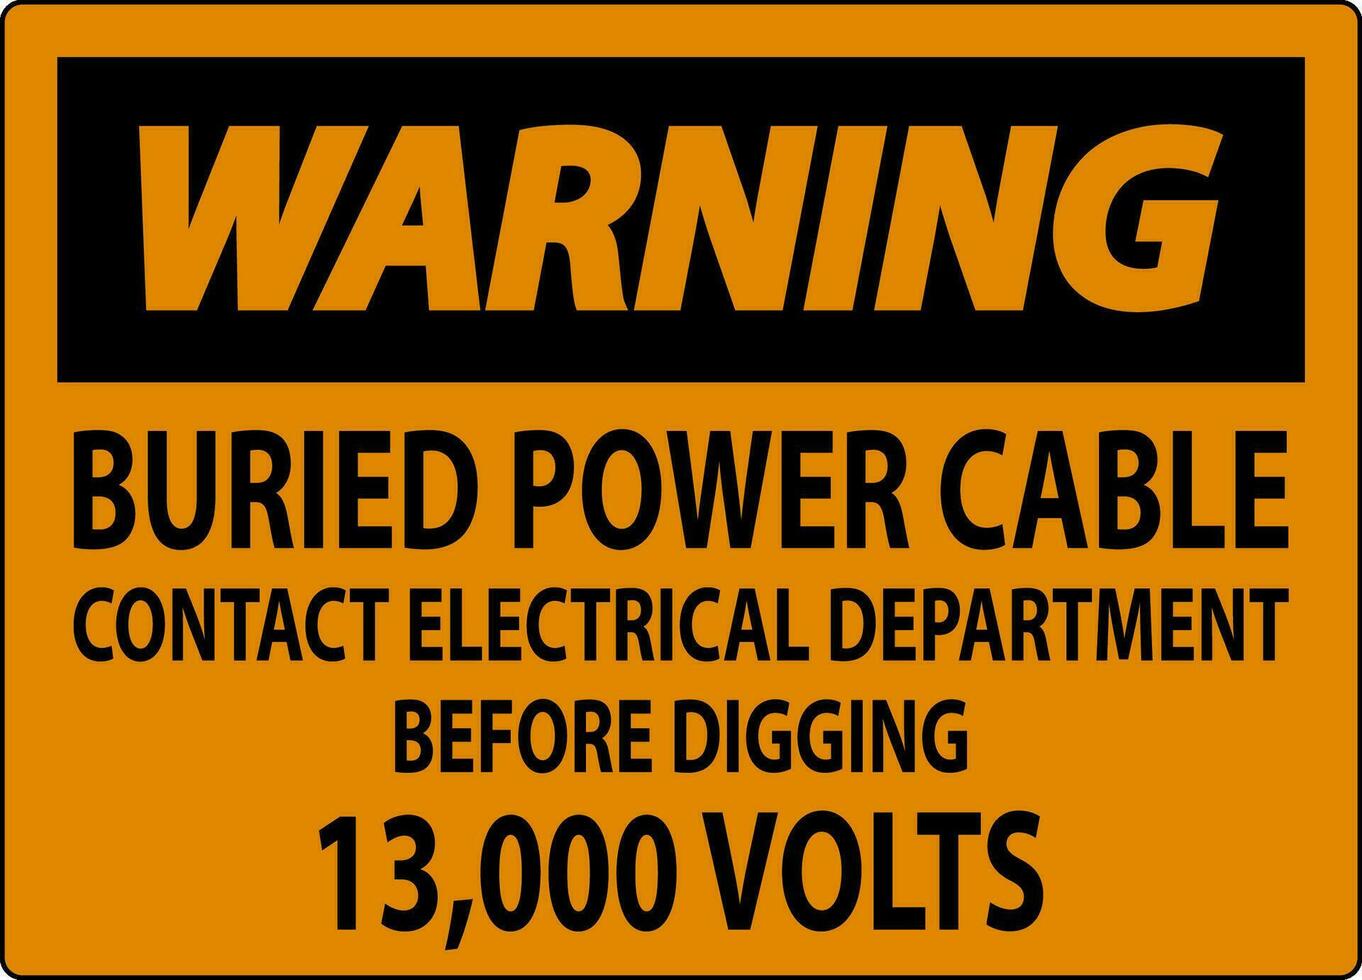 Atenção placa enterrado poder cabo contato elétrico departamento antes escavação 13.000 volts vetor